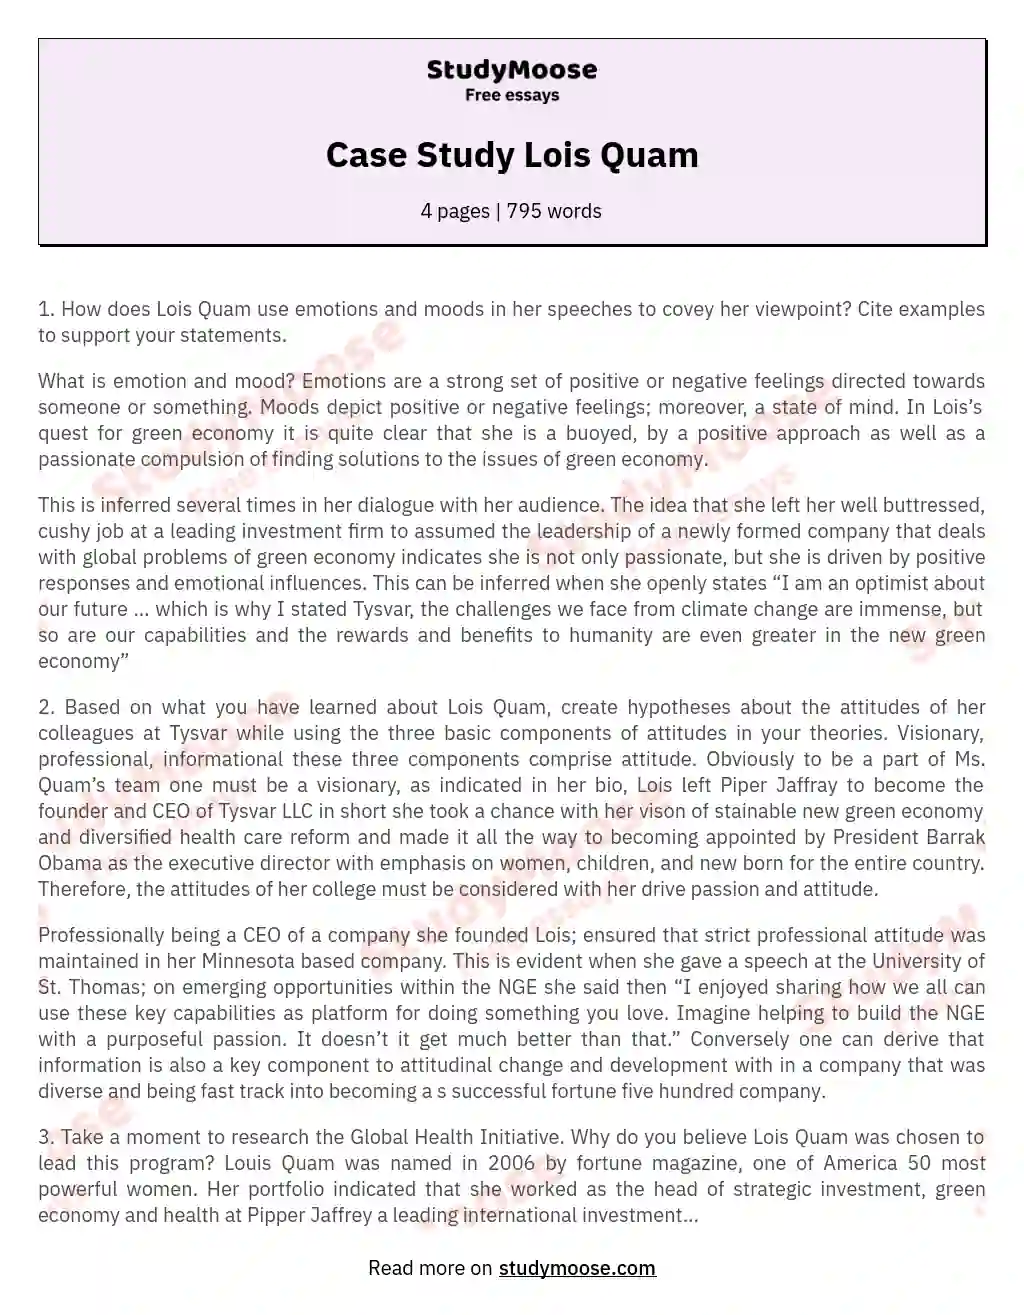 Case Study Lois Quam essay